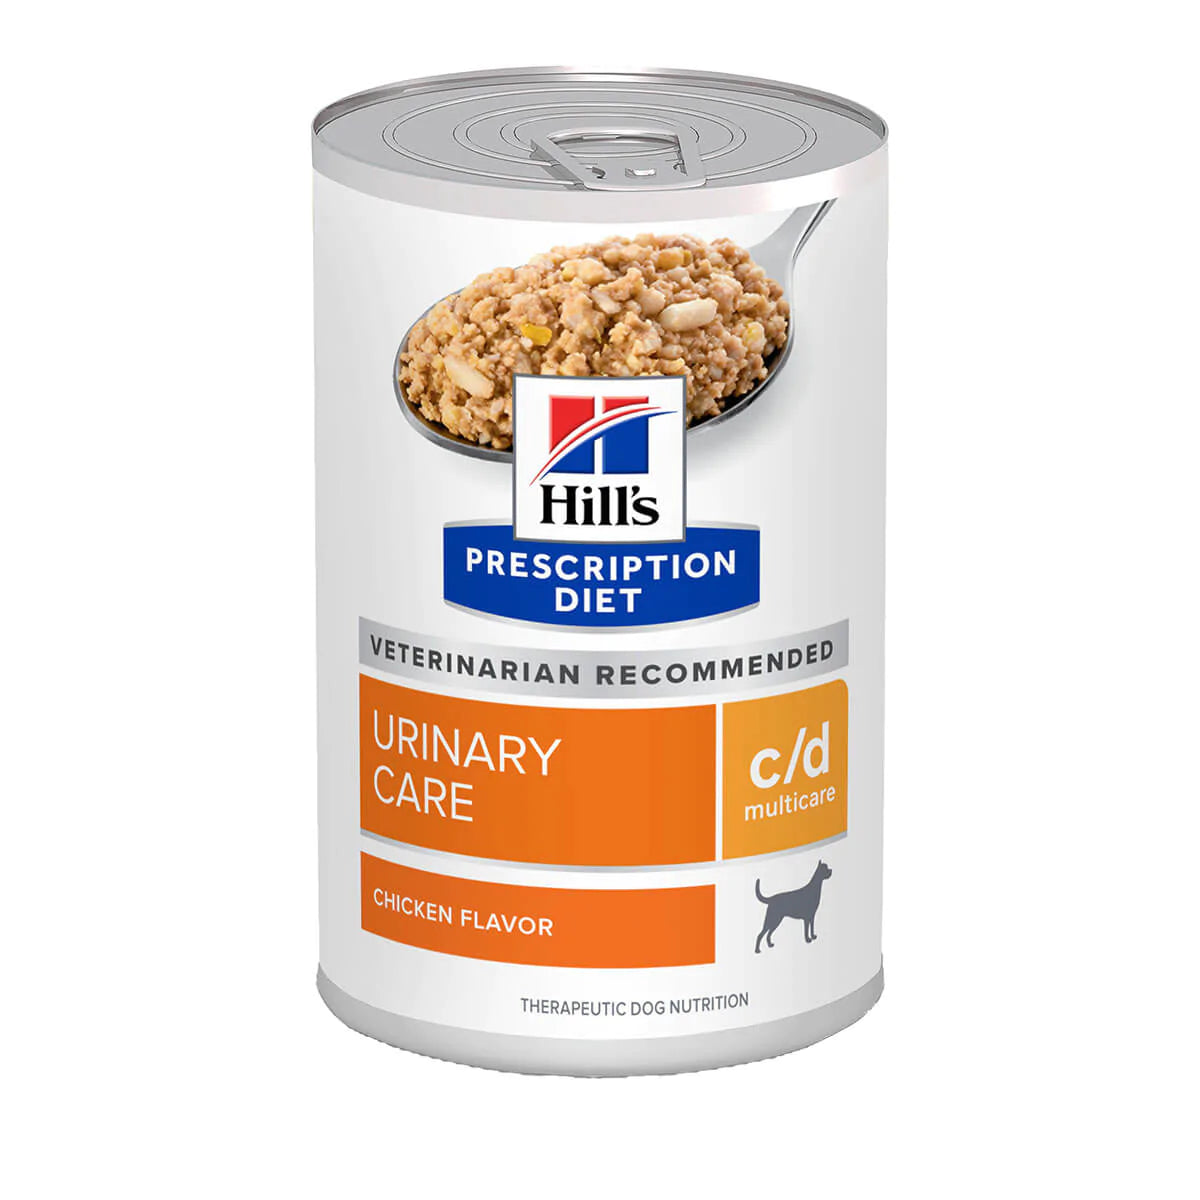 Hill's Prescription Diet C/D Multicare Dog Wet Food 370gm X 12 Cans